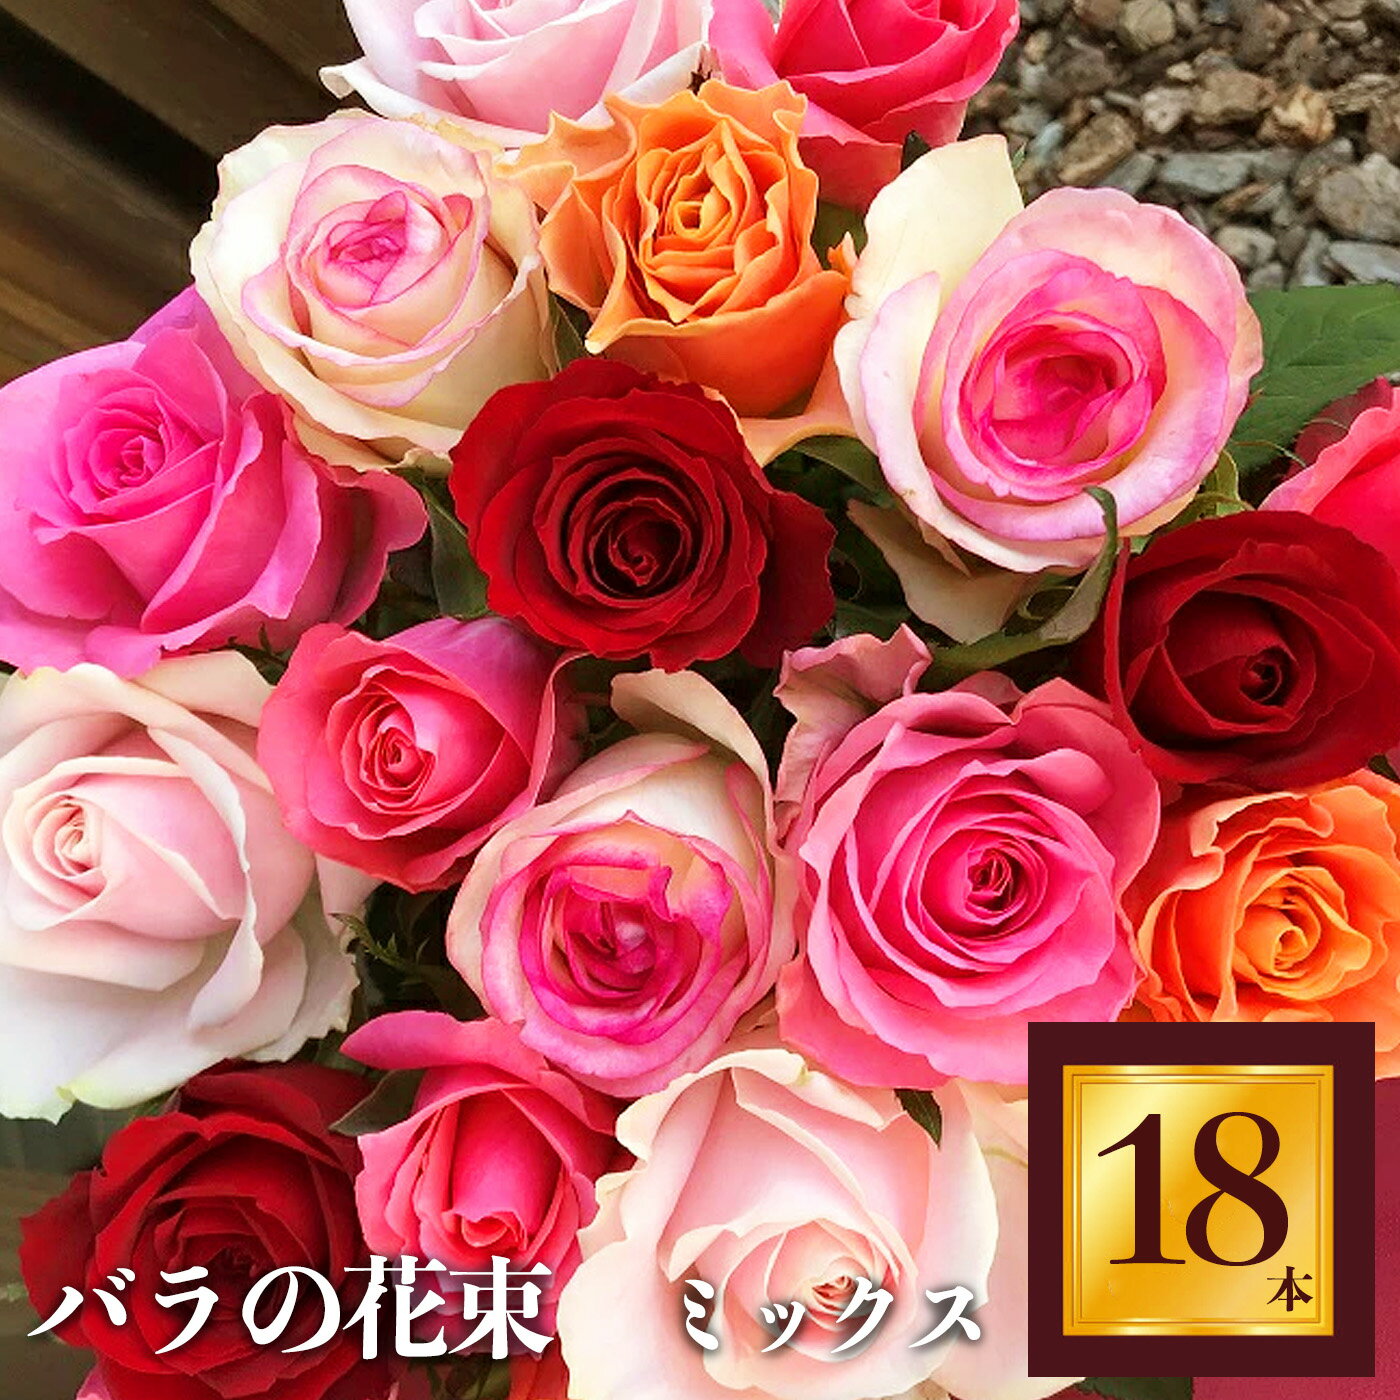 26位! 口コミ数「0件」評価「0」Heguri Rose バラの花束（18本）ローズ フラワー 新鮮 高品質 豪華 綺麗 平群のバラ 花束 平群ブランド 誕生日 記念日 お祝･･･ 